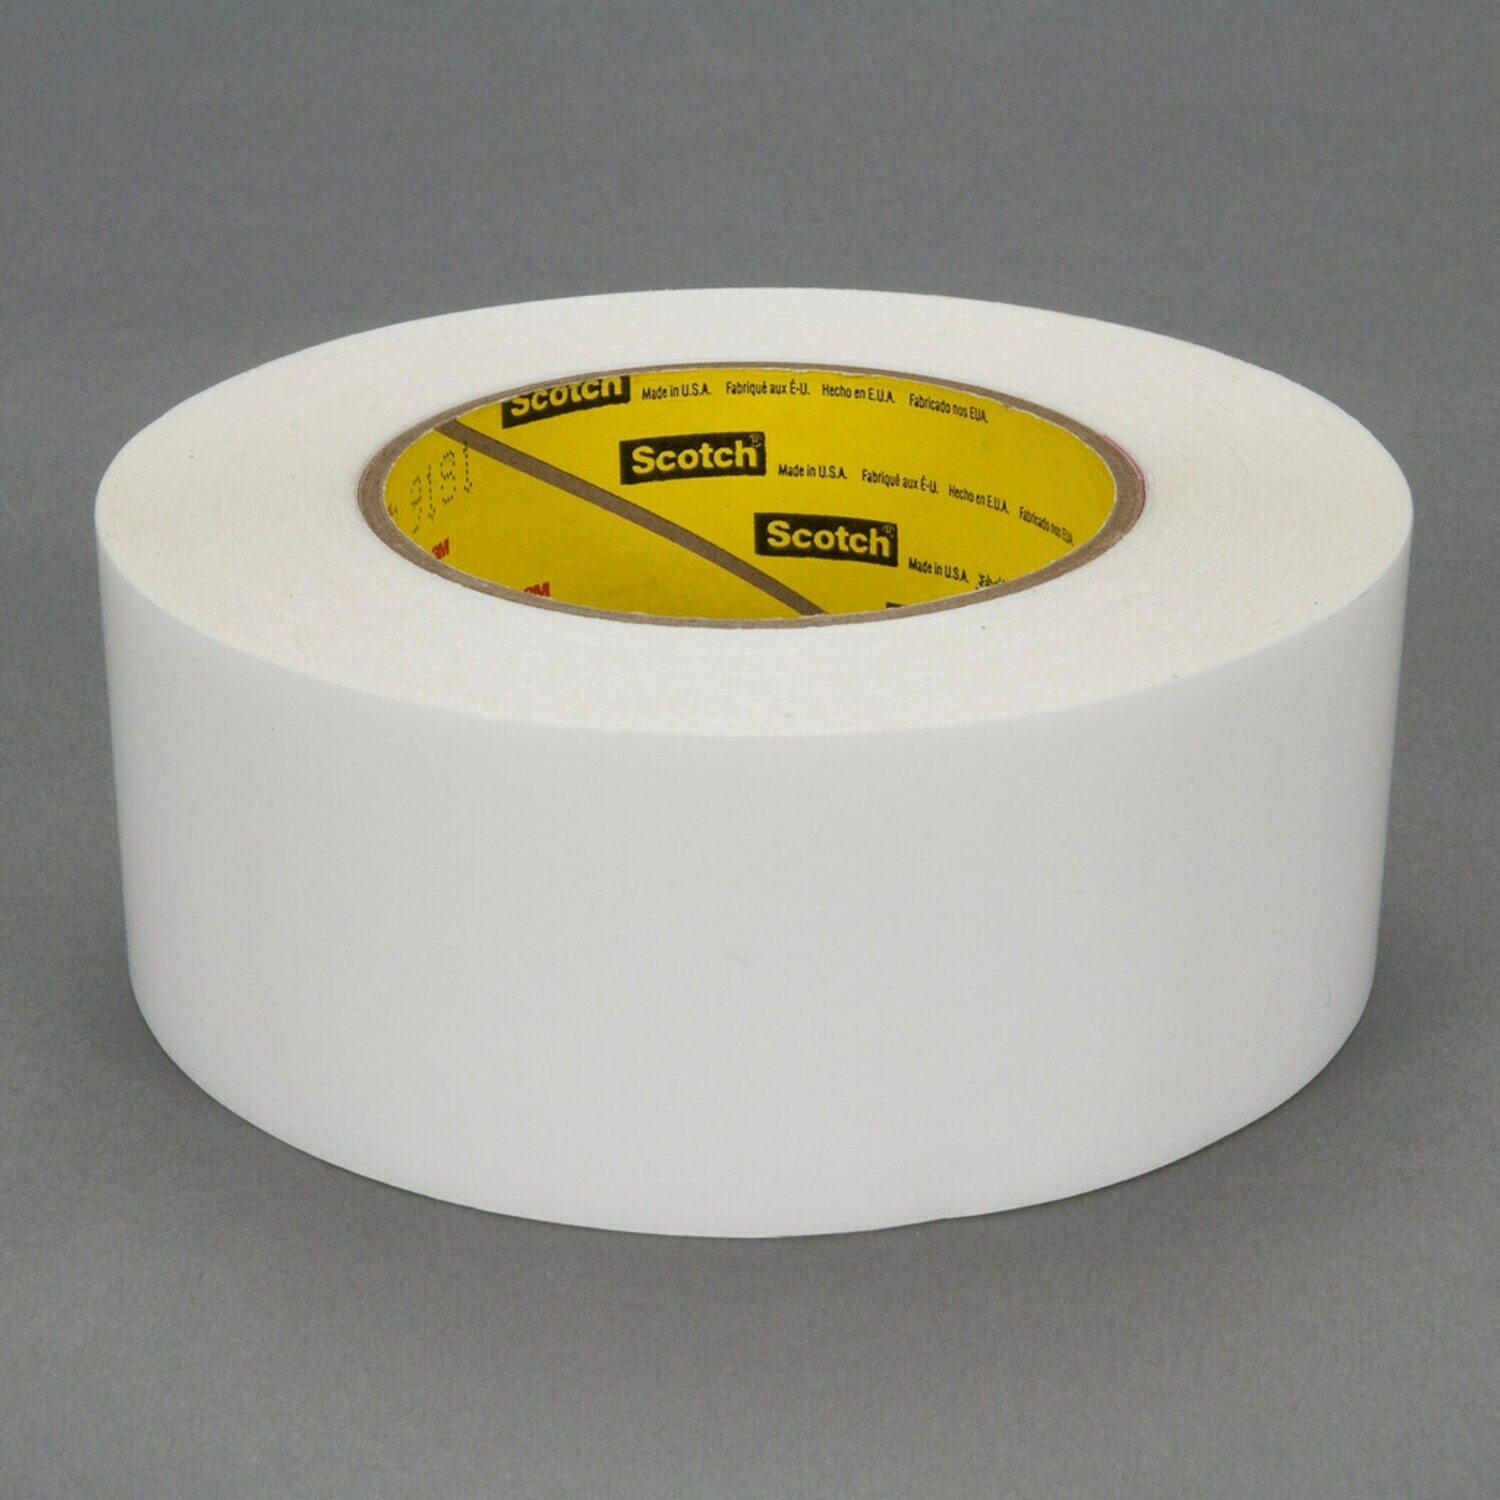 FASCIQ® Pre-Tape Adhesive Spray